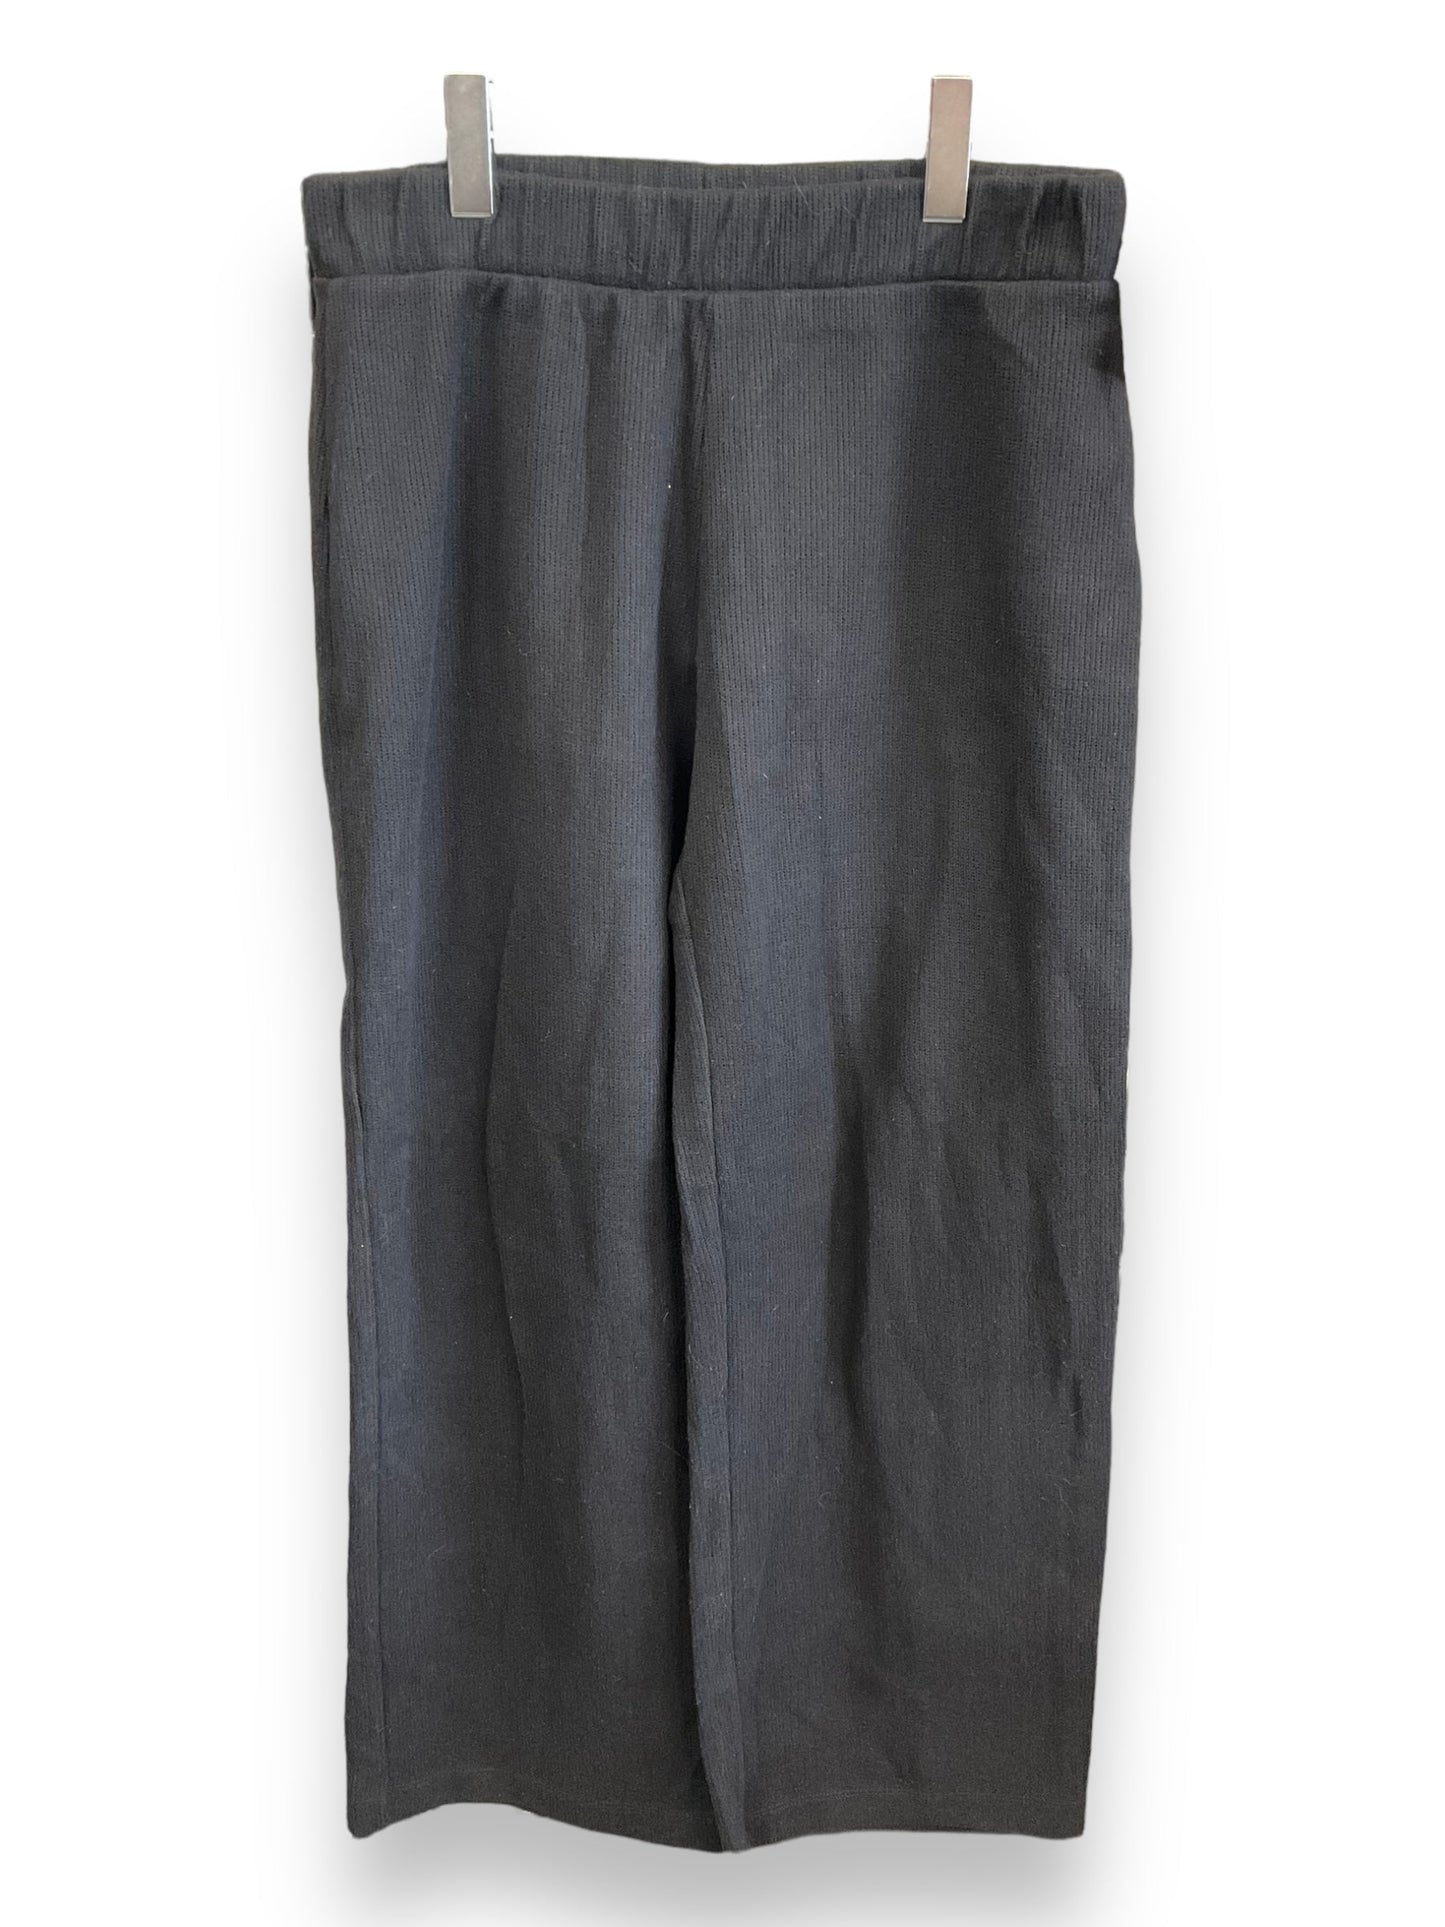 Pants Work/dress By Zara  Size: L